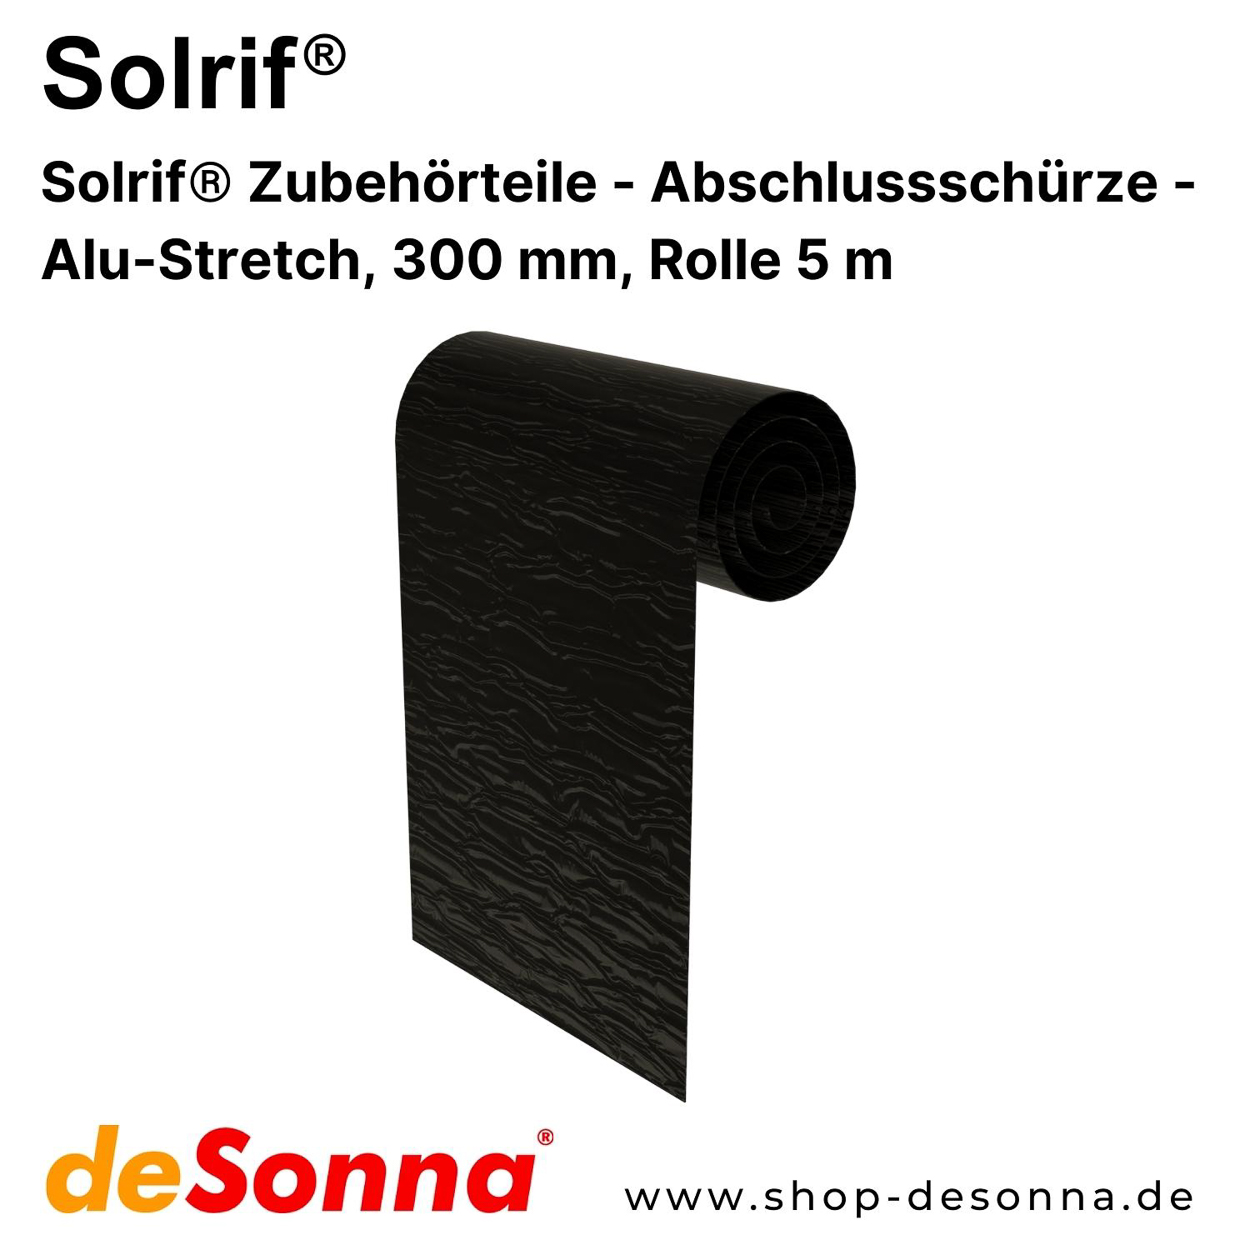 Solrif® Abschlussschürze - Alu-Stretch, 300 mm, Rolle 5 m - Zubehörteile